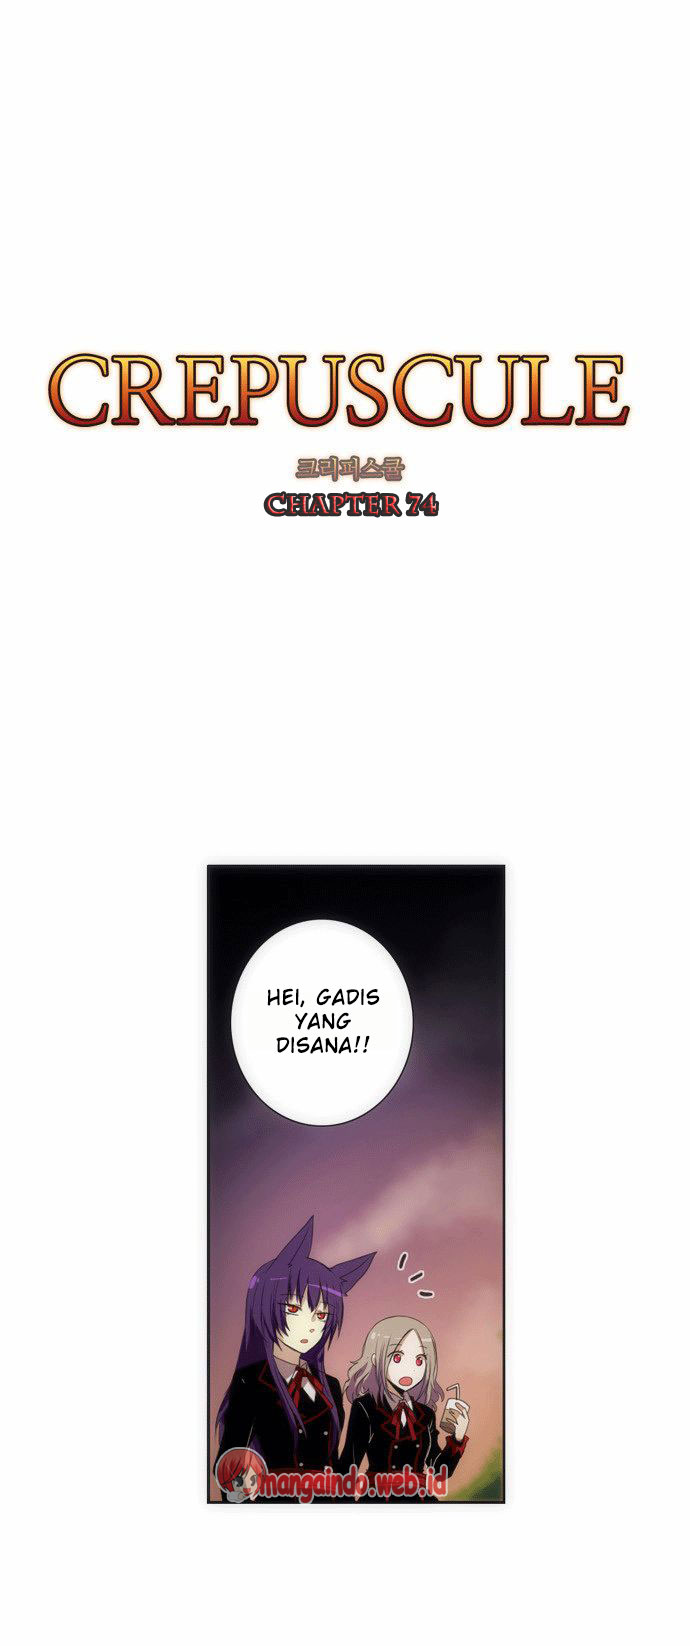 Crepuscule Chapter 74